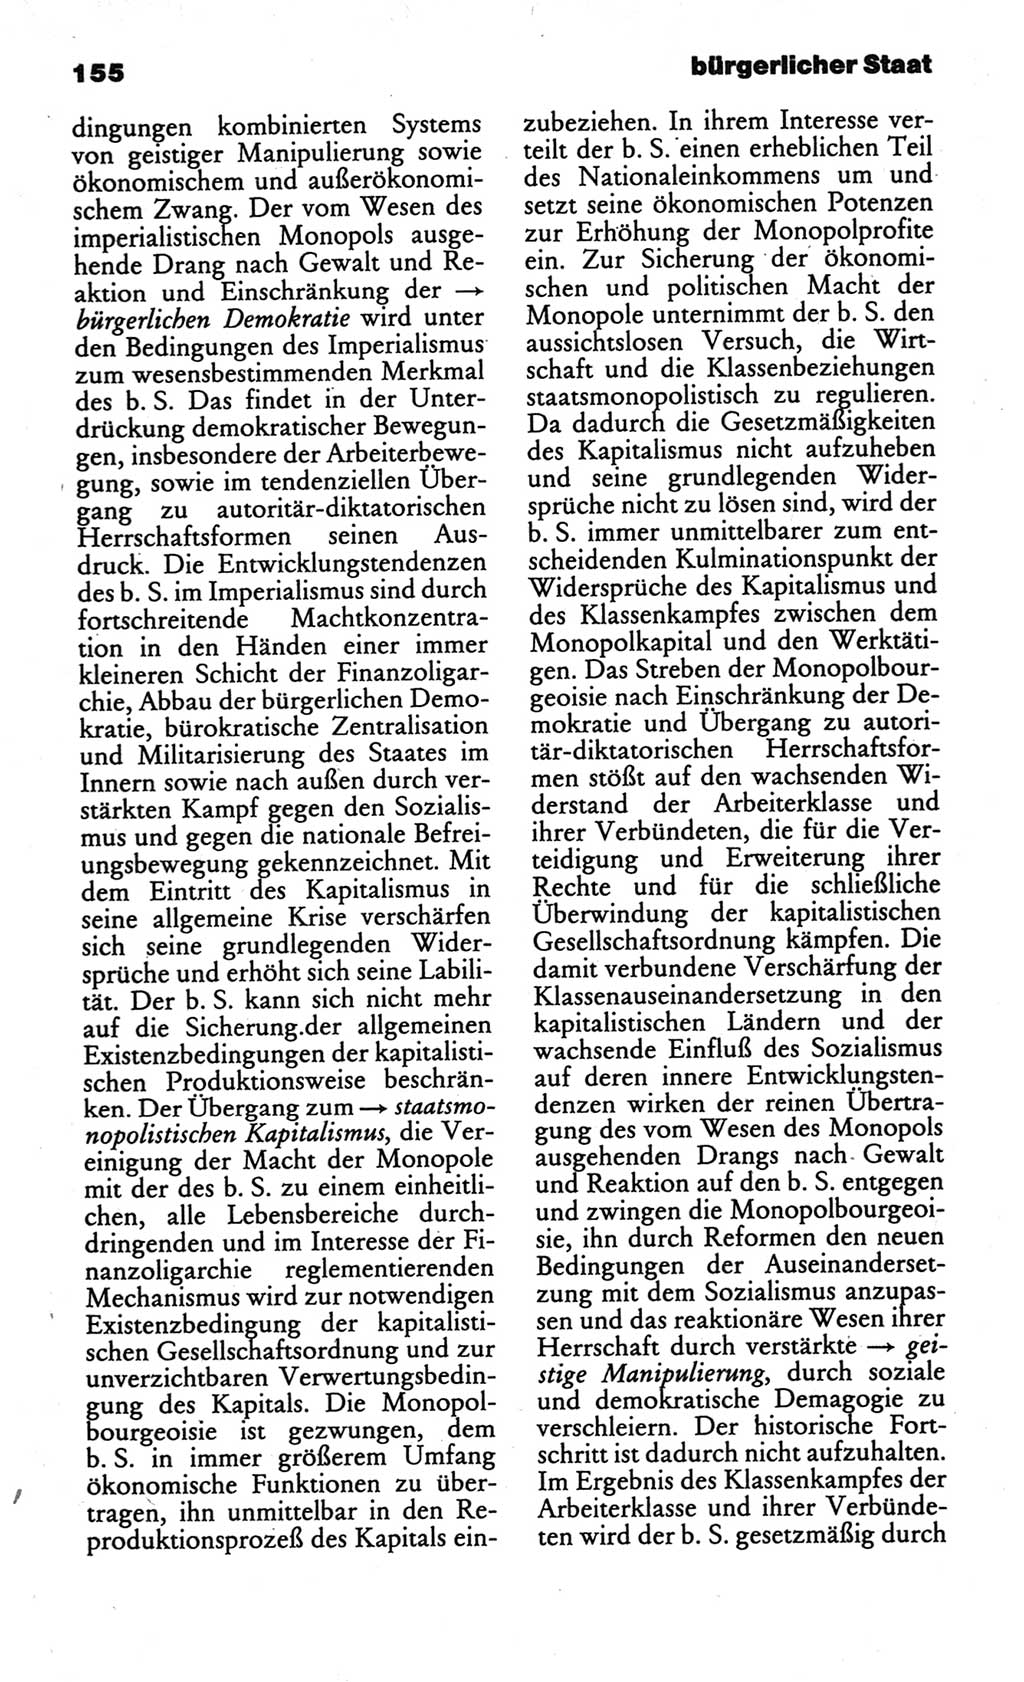 Kleines politisches Wörterbuch [Deutsche Demokratische Republik (DDR)] 1986, Seite 155 (Kl. pol. Wb. DDR 1986, S. 155)